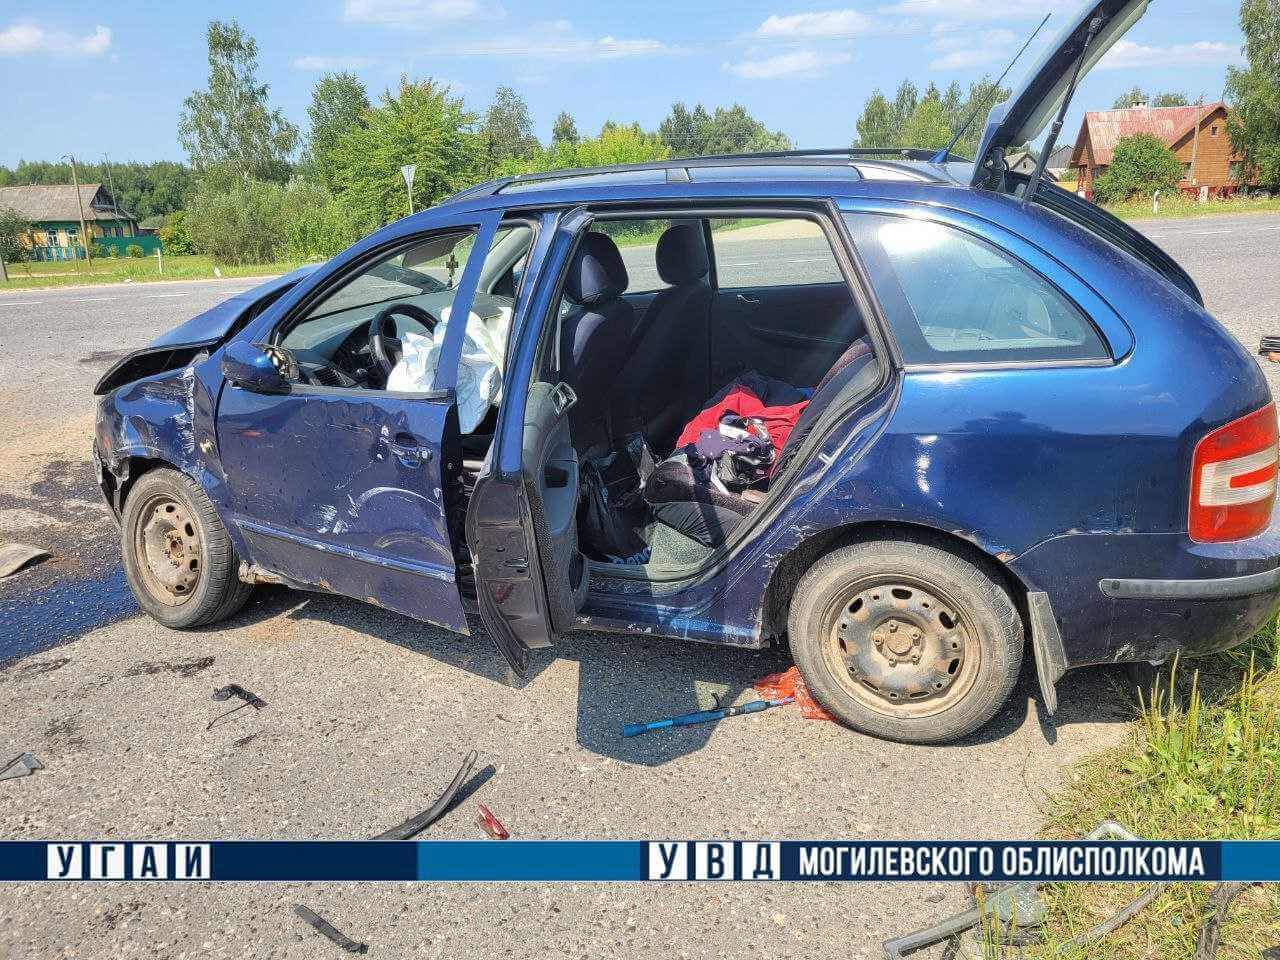 13-летний пассажир травмирован в ДТП в Костюковичском районе